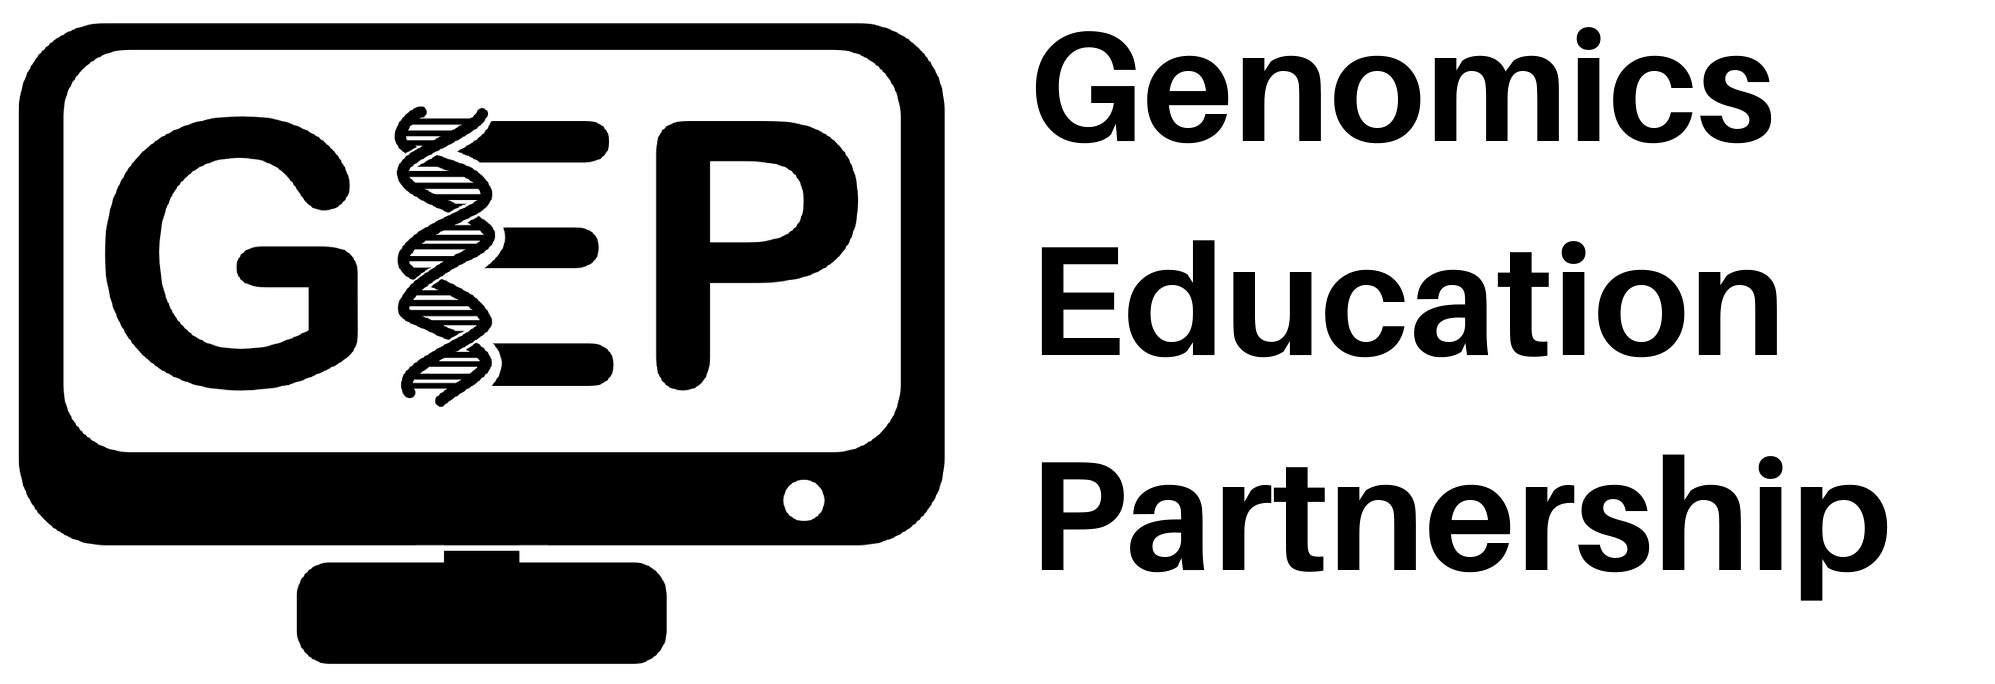 GEP logo